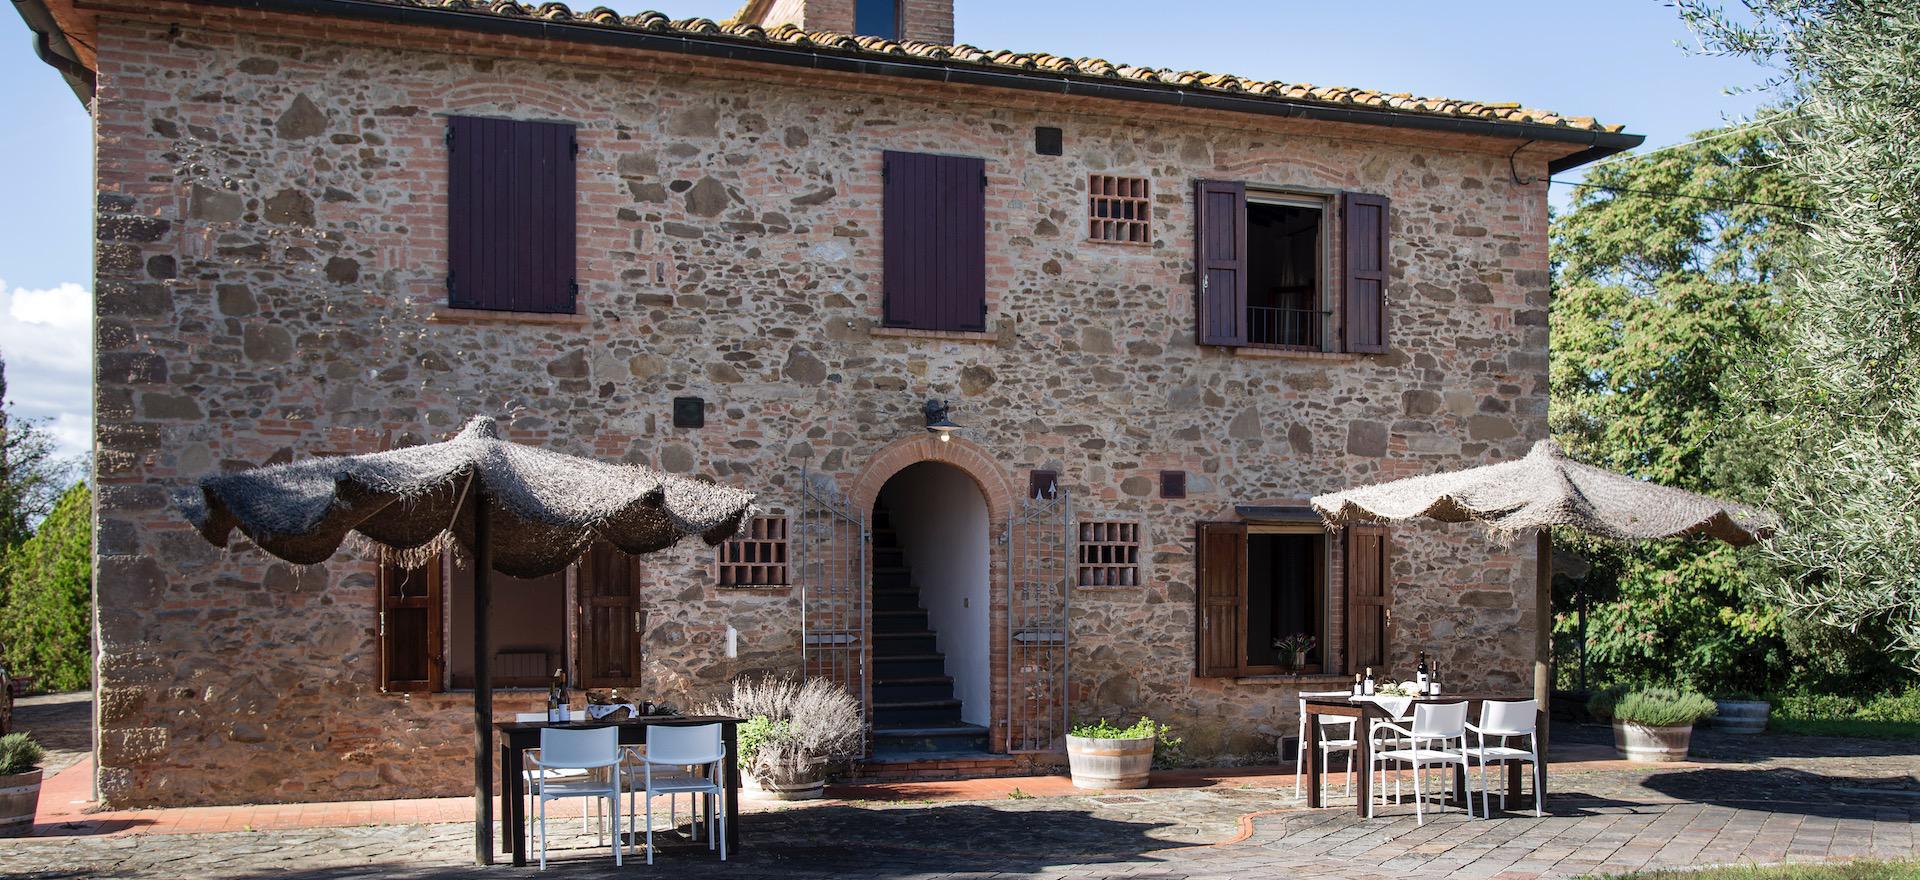 Agriturismo met wijnkelder in het hart van Toscane